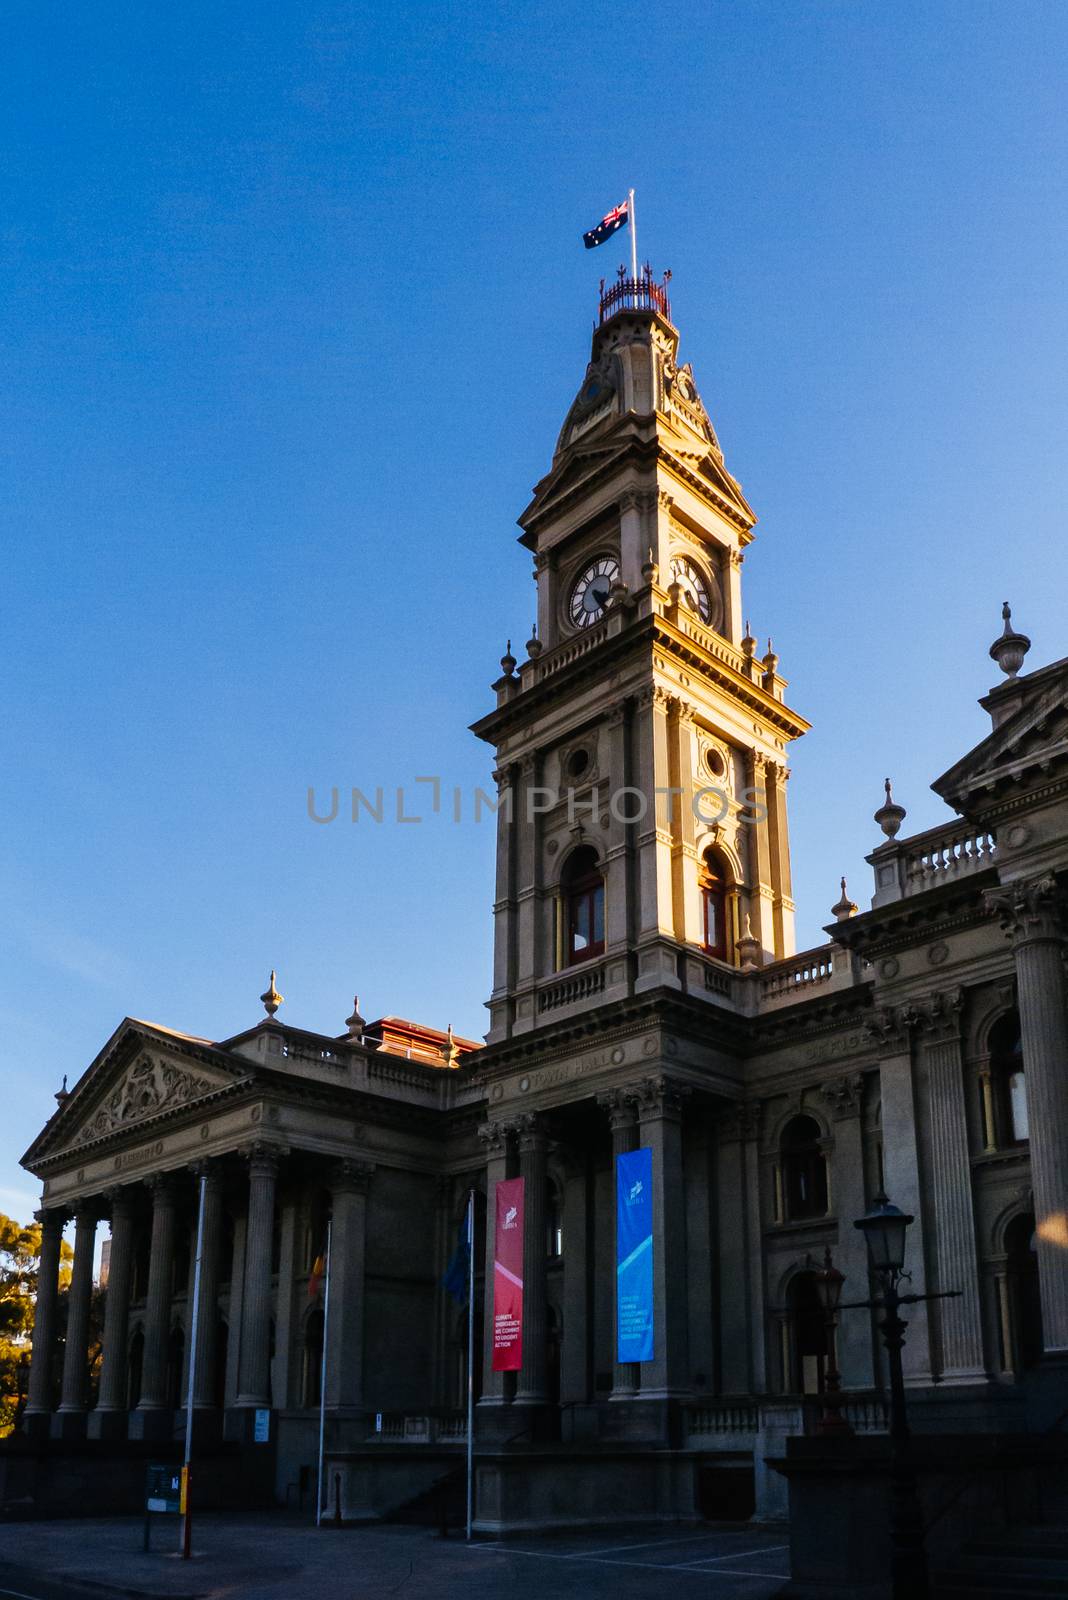 Melbourne, Australia - June 12, 2020: The majestic Fitzroy Town Hall and library near Brunswick St in Fitzroy, Victoria, Australia